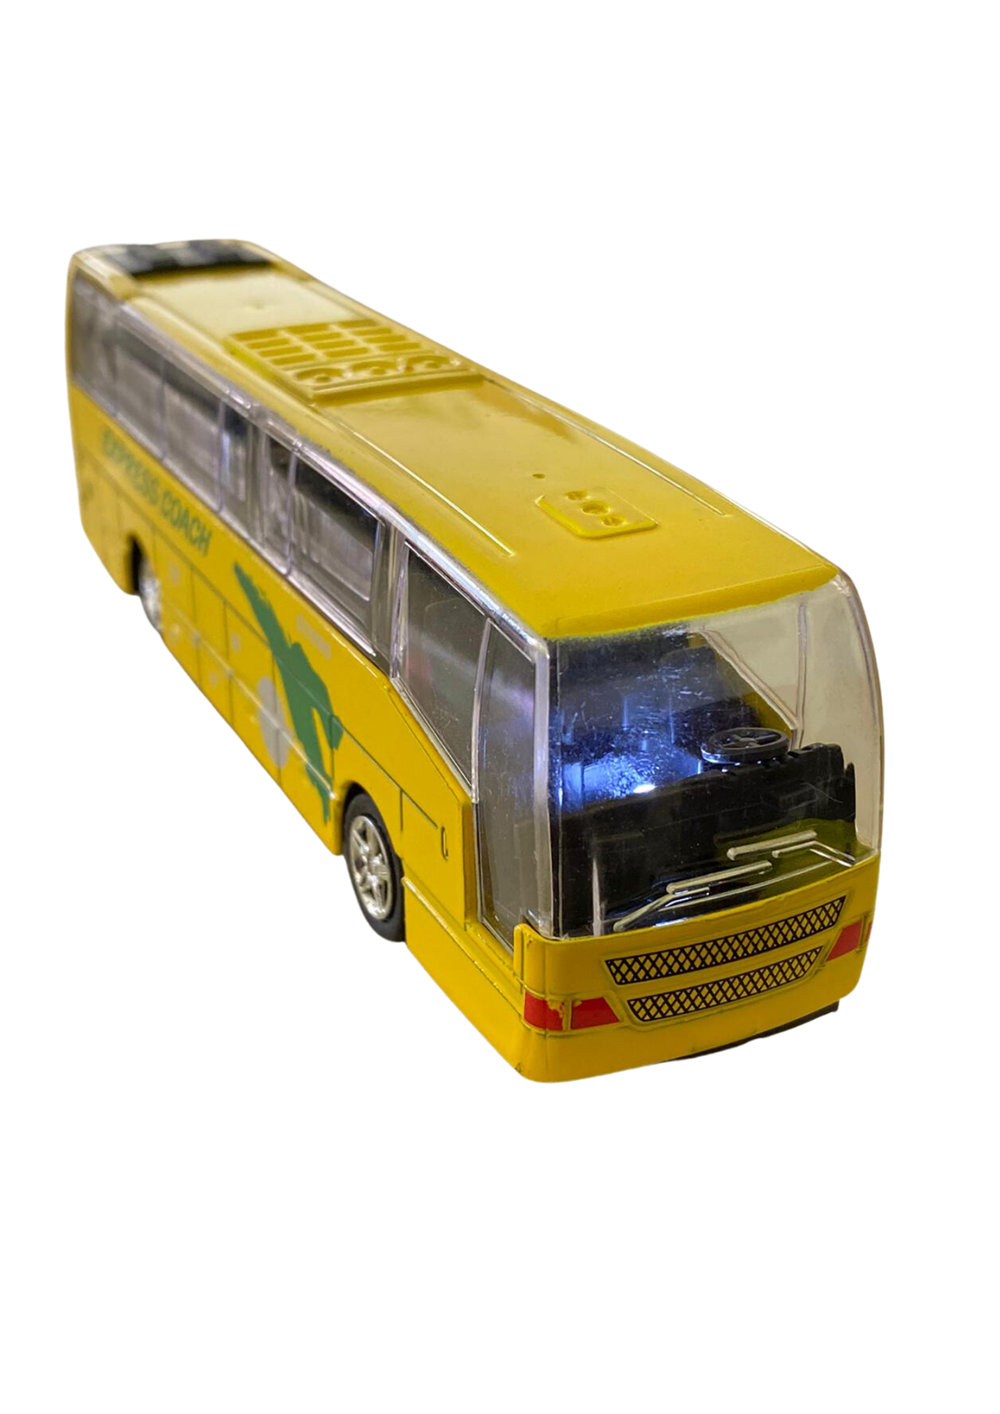 Oyuncak Otobüs Fiyatları ve Modelleri | Depo61'de